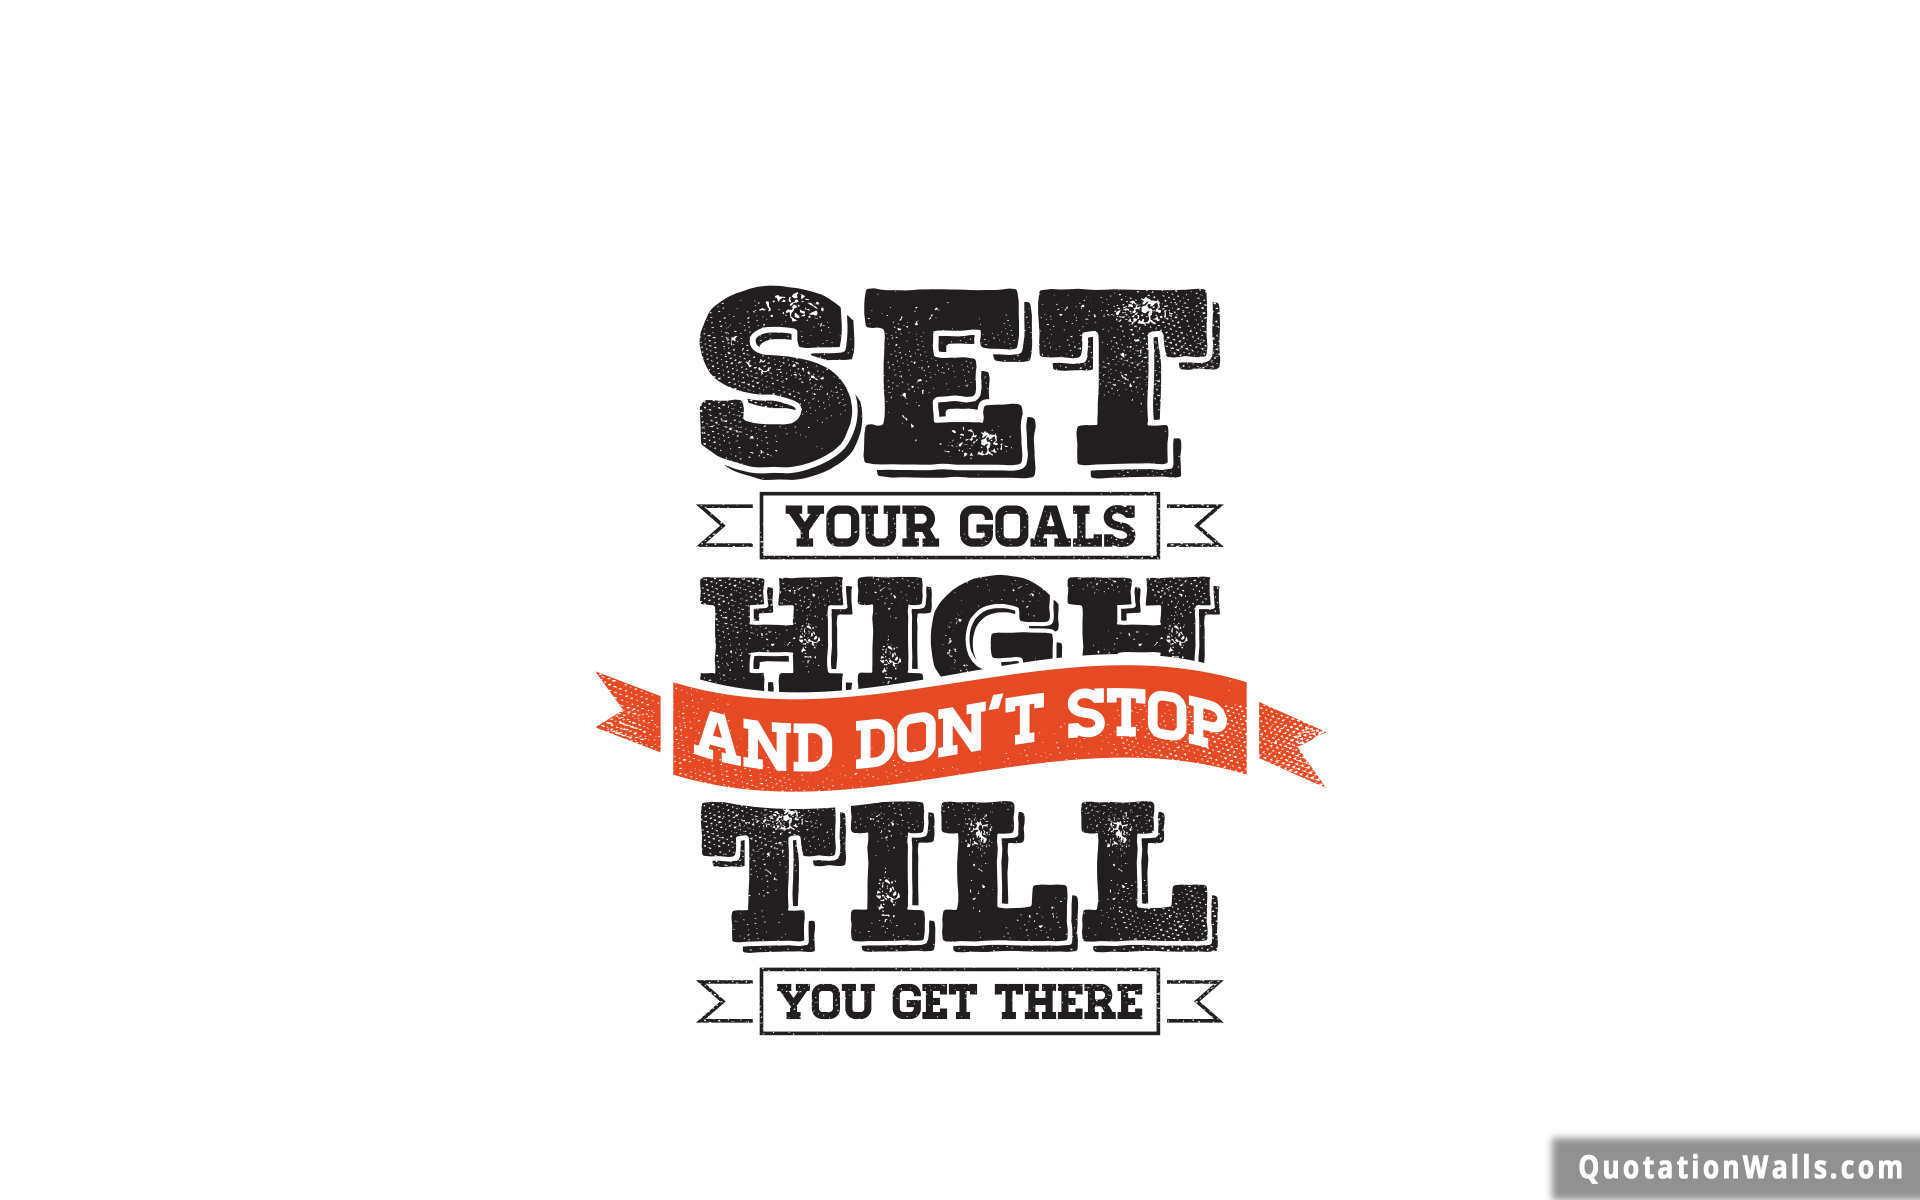 Goal Setting Motivational Wallpaper for Desktop